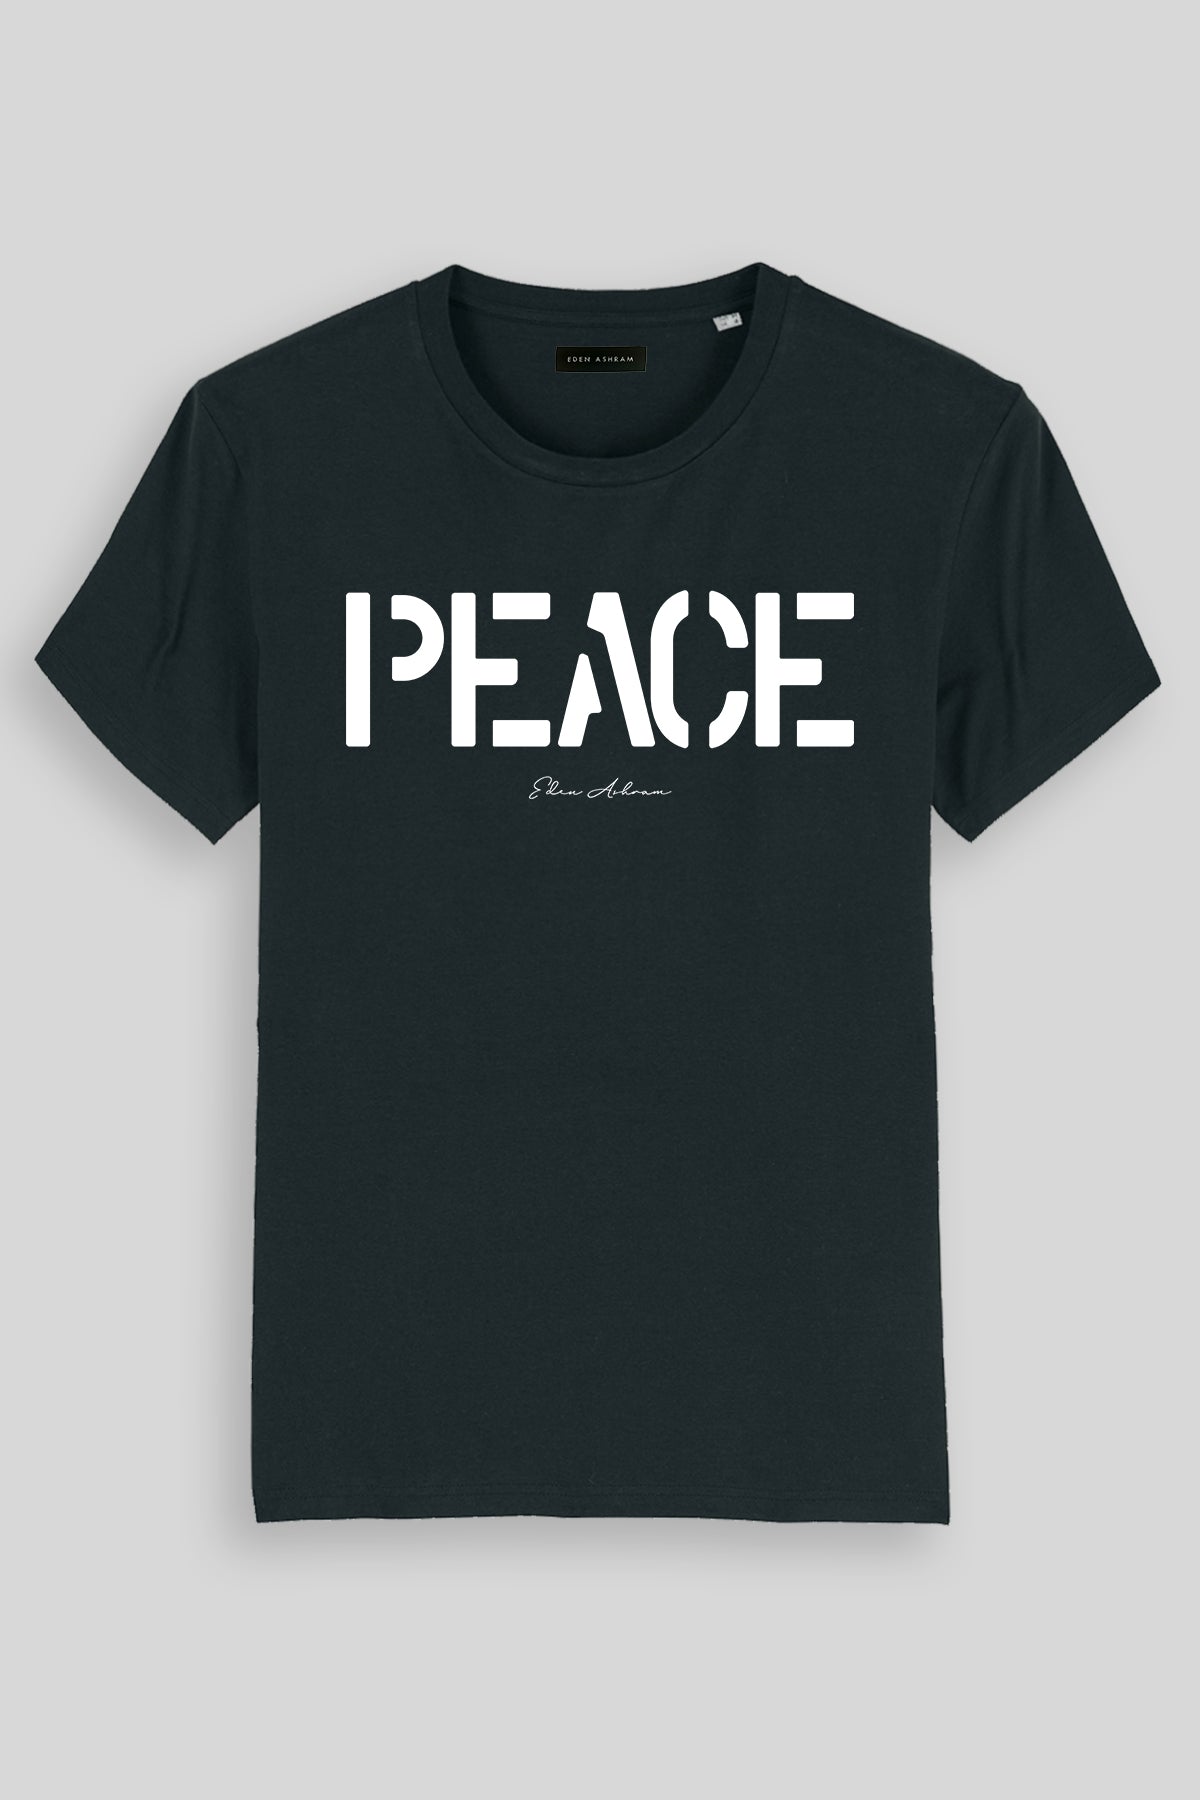 EDEN ASHRAM PEACE - Premium Classic T-Shirt Black